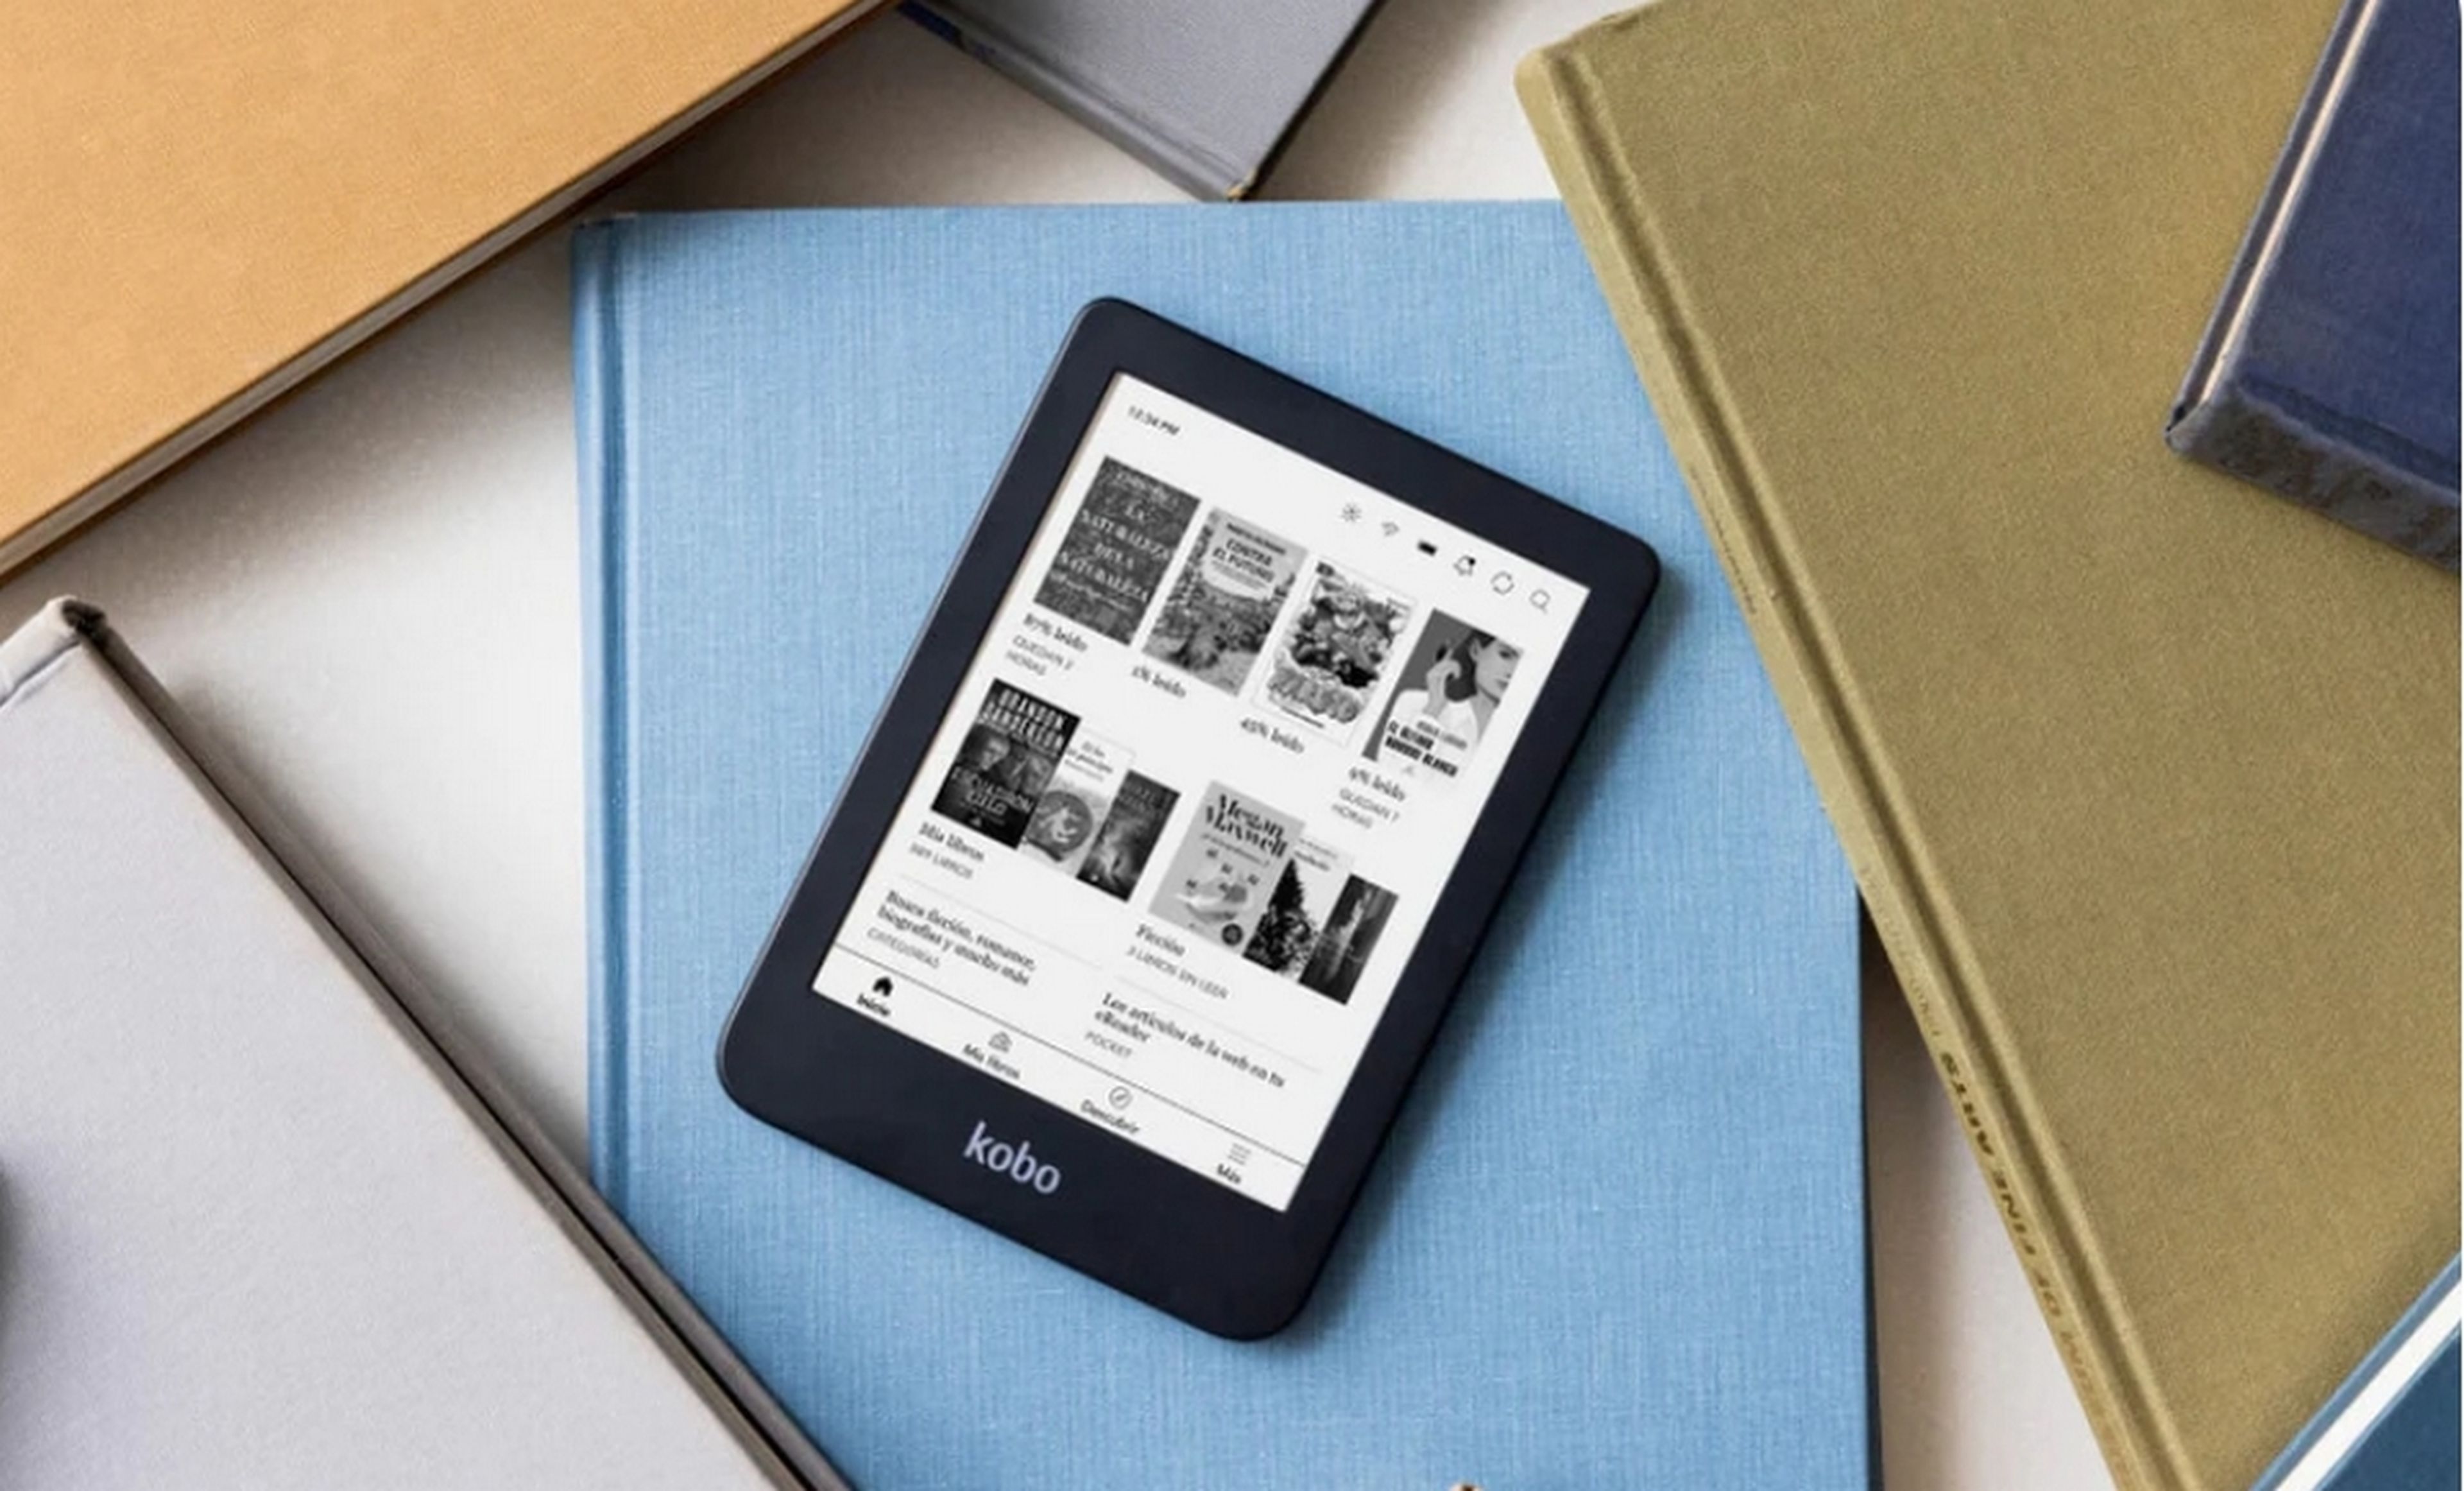 Amazon Kindle no llega antes de Navidad, pero este ebook de Kobo sí y está rebajado